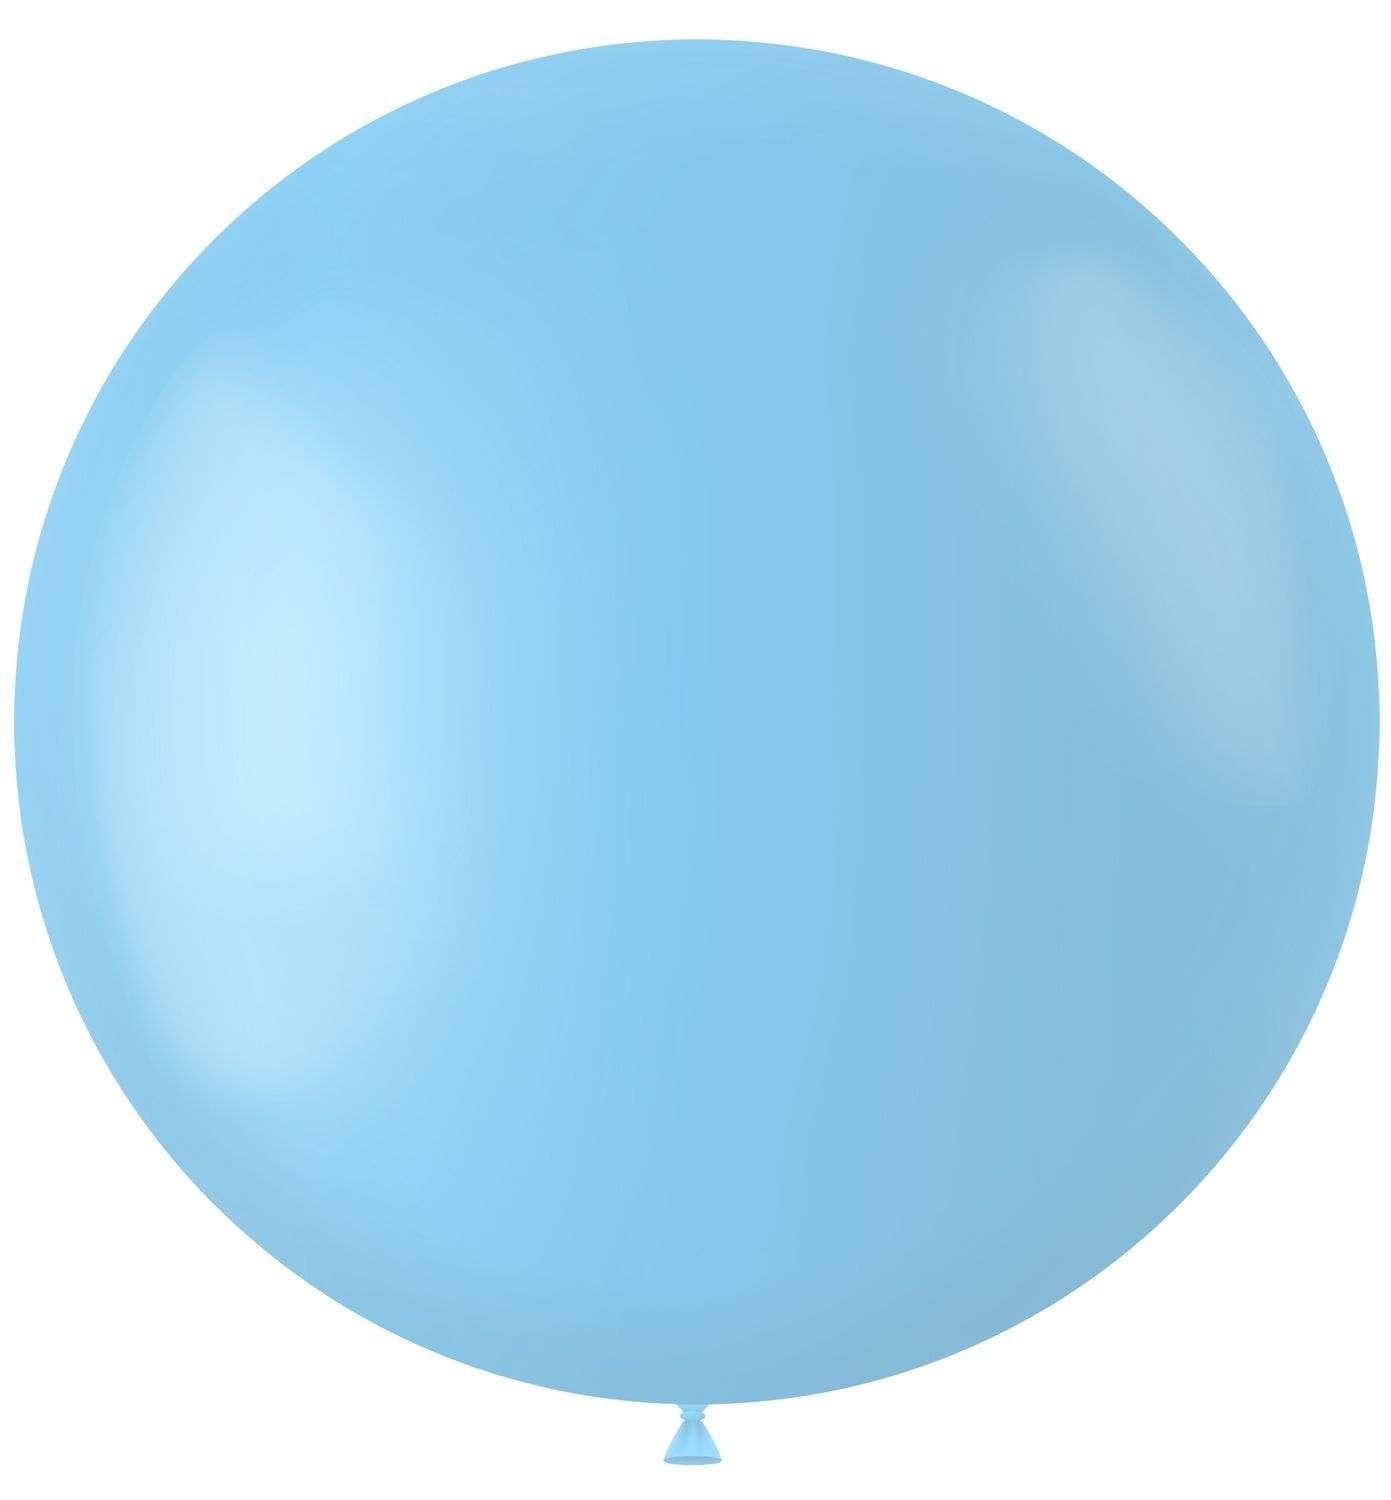 Ballonnen baby blauw mat 78cm